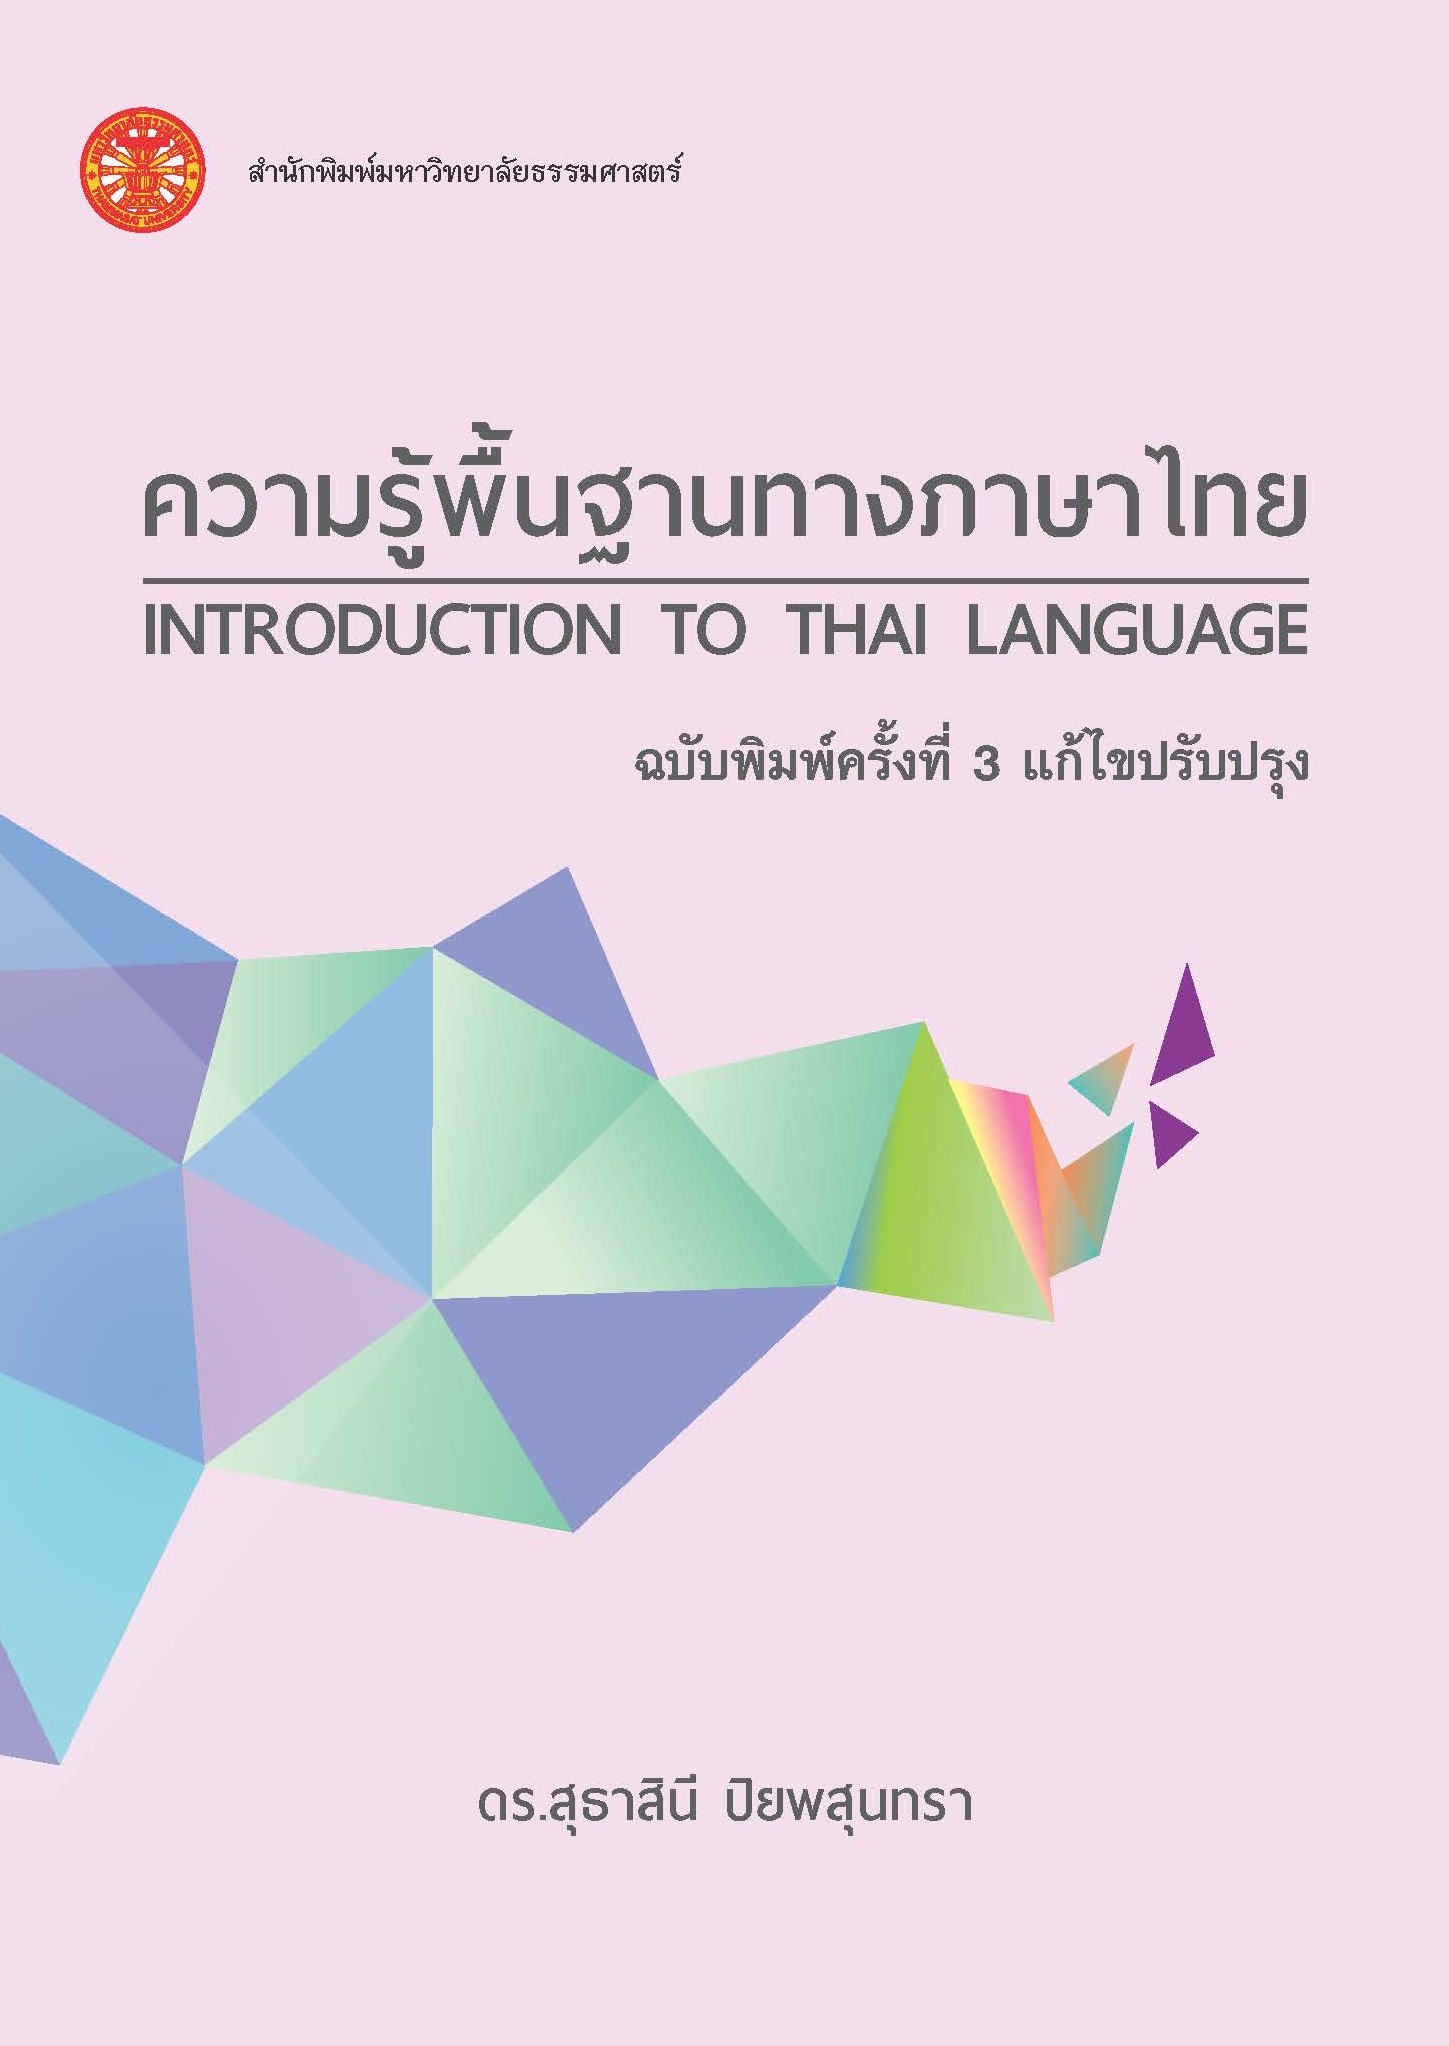 ความรู้พื้นฐานทางภาษาไทย